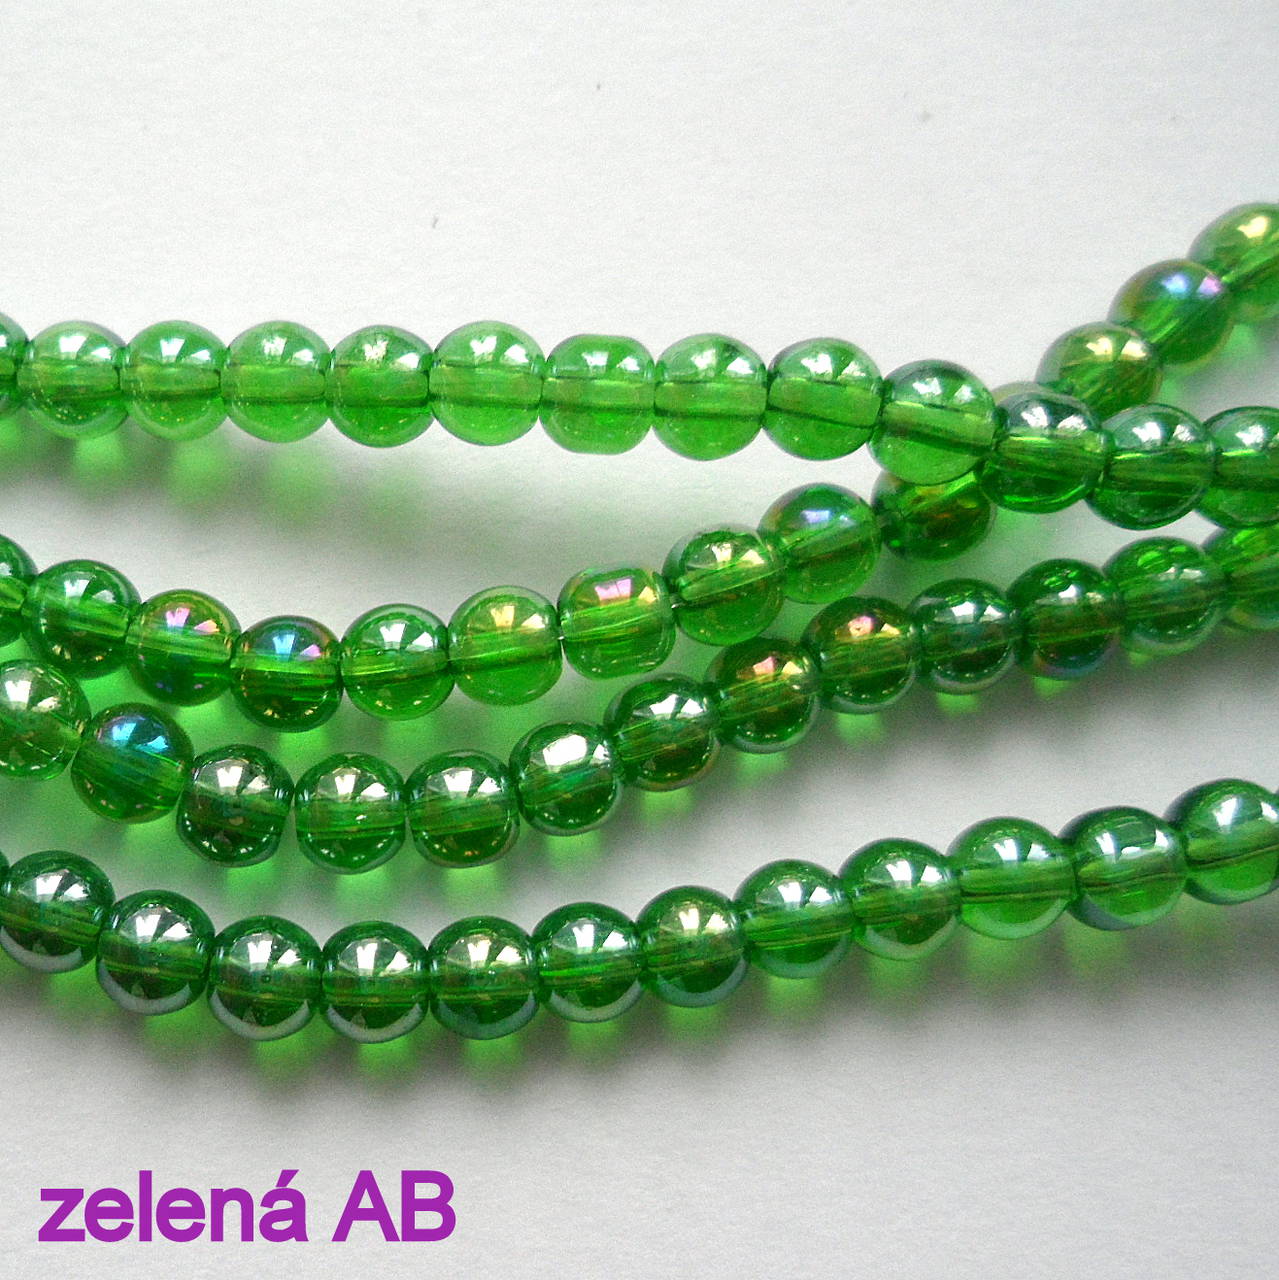 CrystaLine Beads™-4mm-1ks (zelená AB)